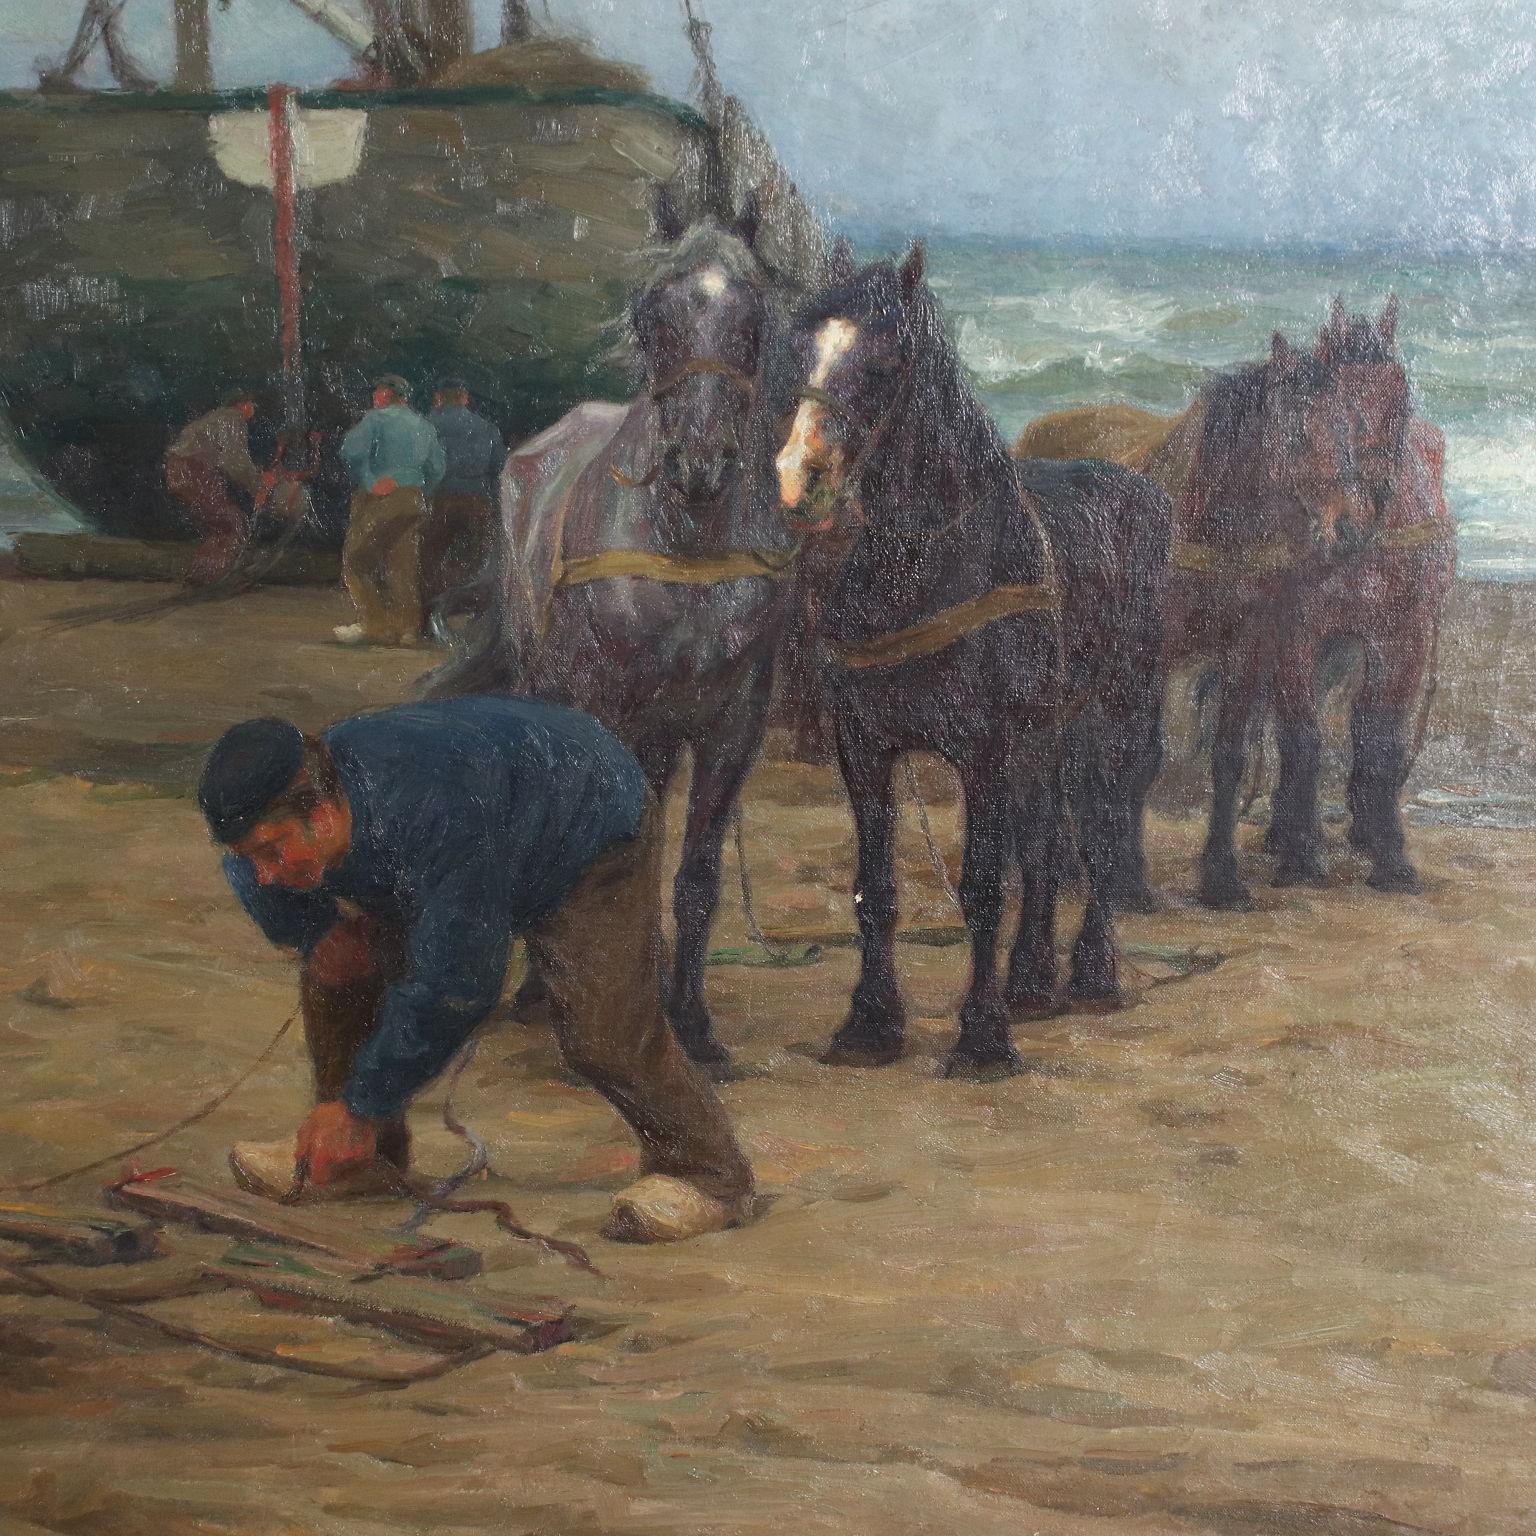 Peinture à l'huile sur toile - Scène de plage, Edgard Farasyn - XXe siècle - Autres styles artistiques Painting par Edgar Farasyn